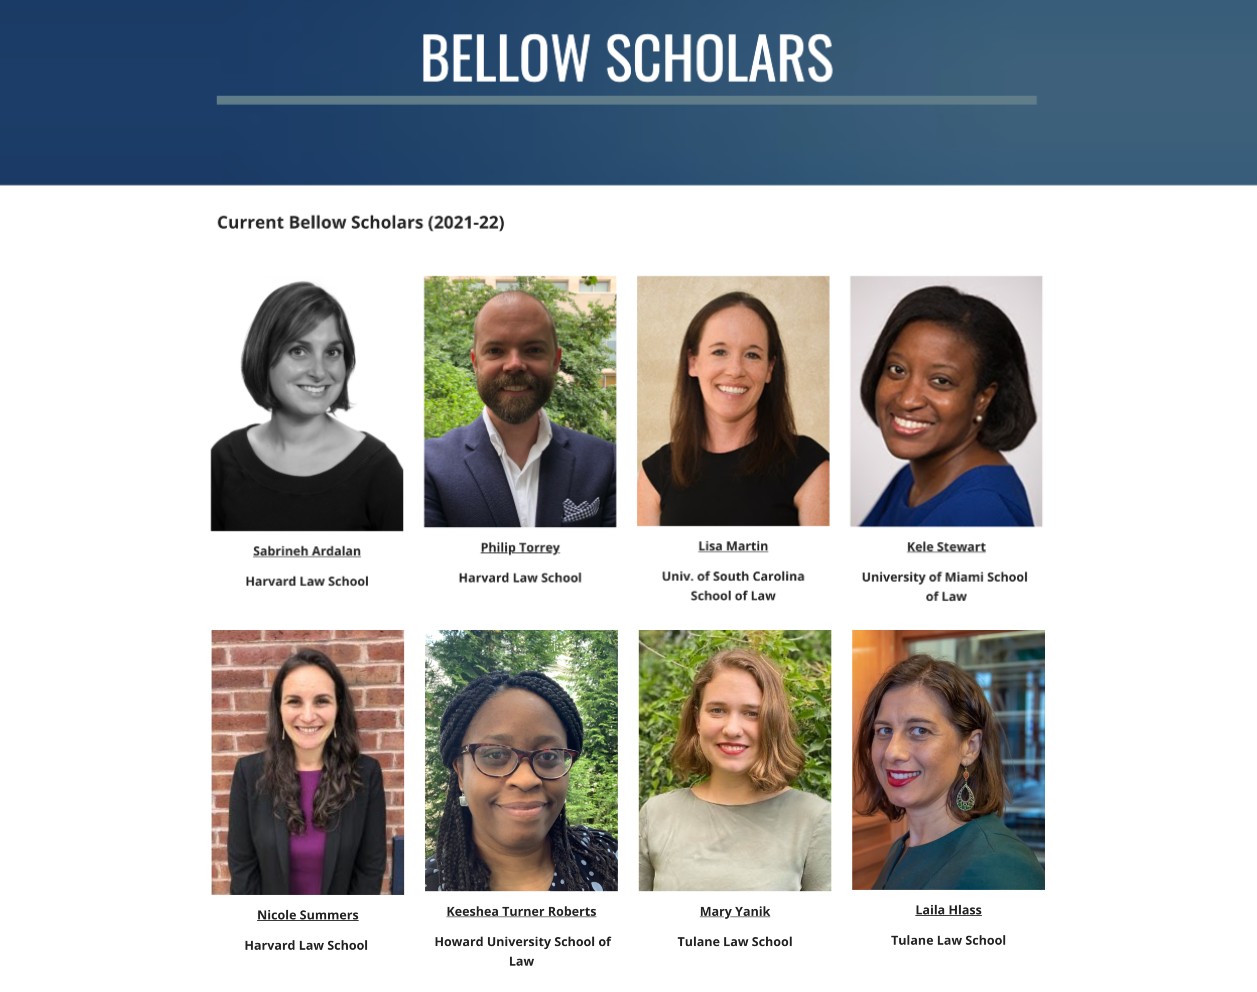 Bellow scholars